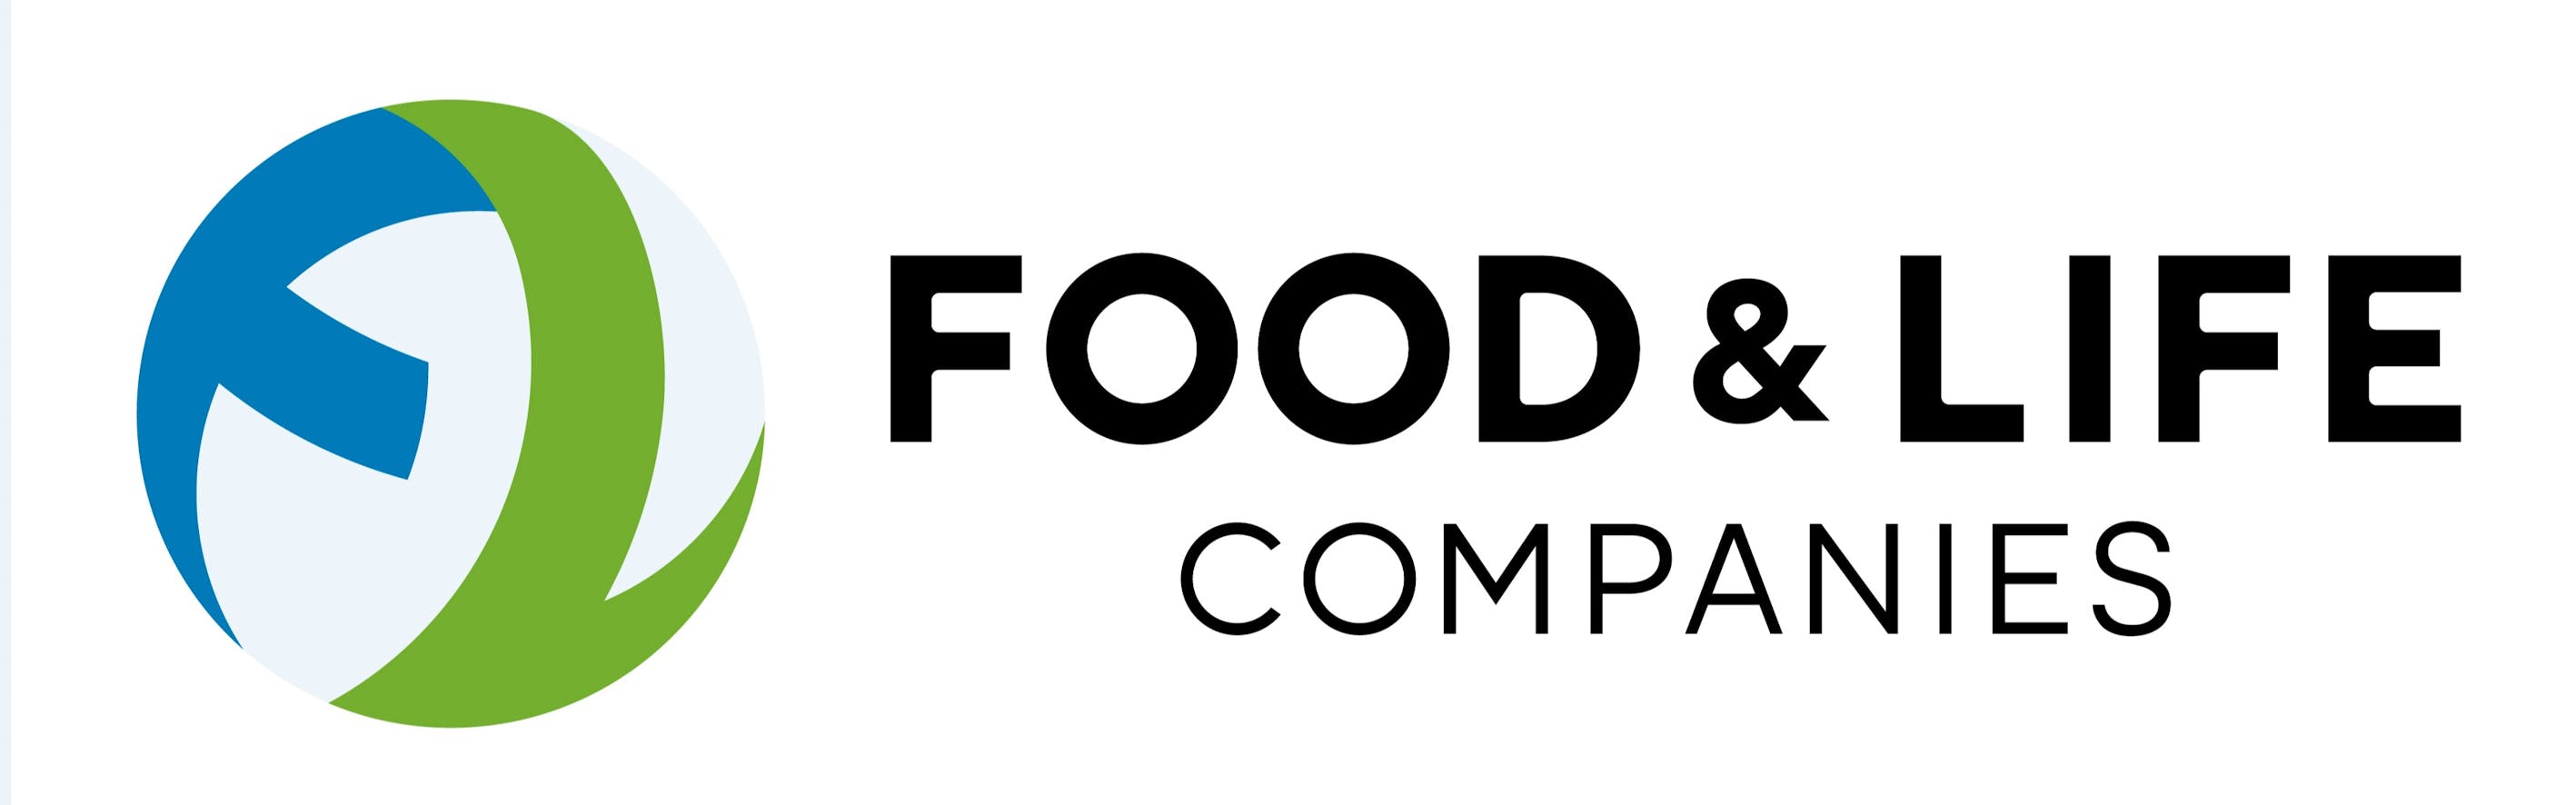 株式会社FOOD & LIFE COMPANIES - カバー画像